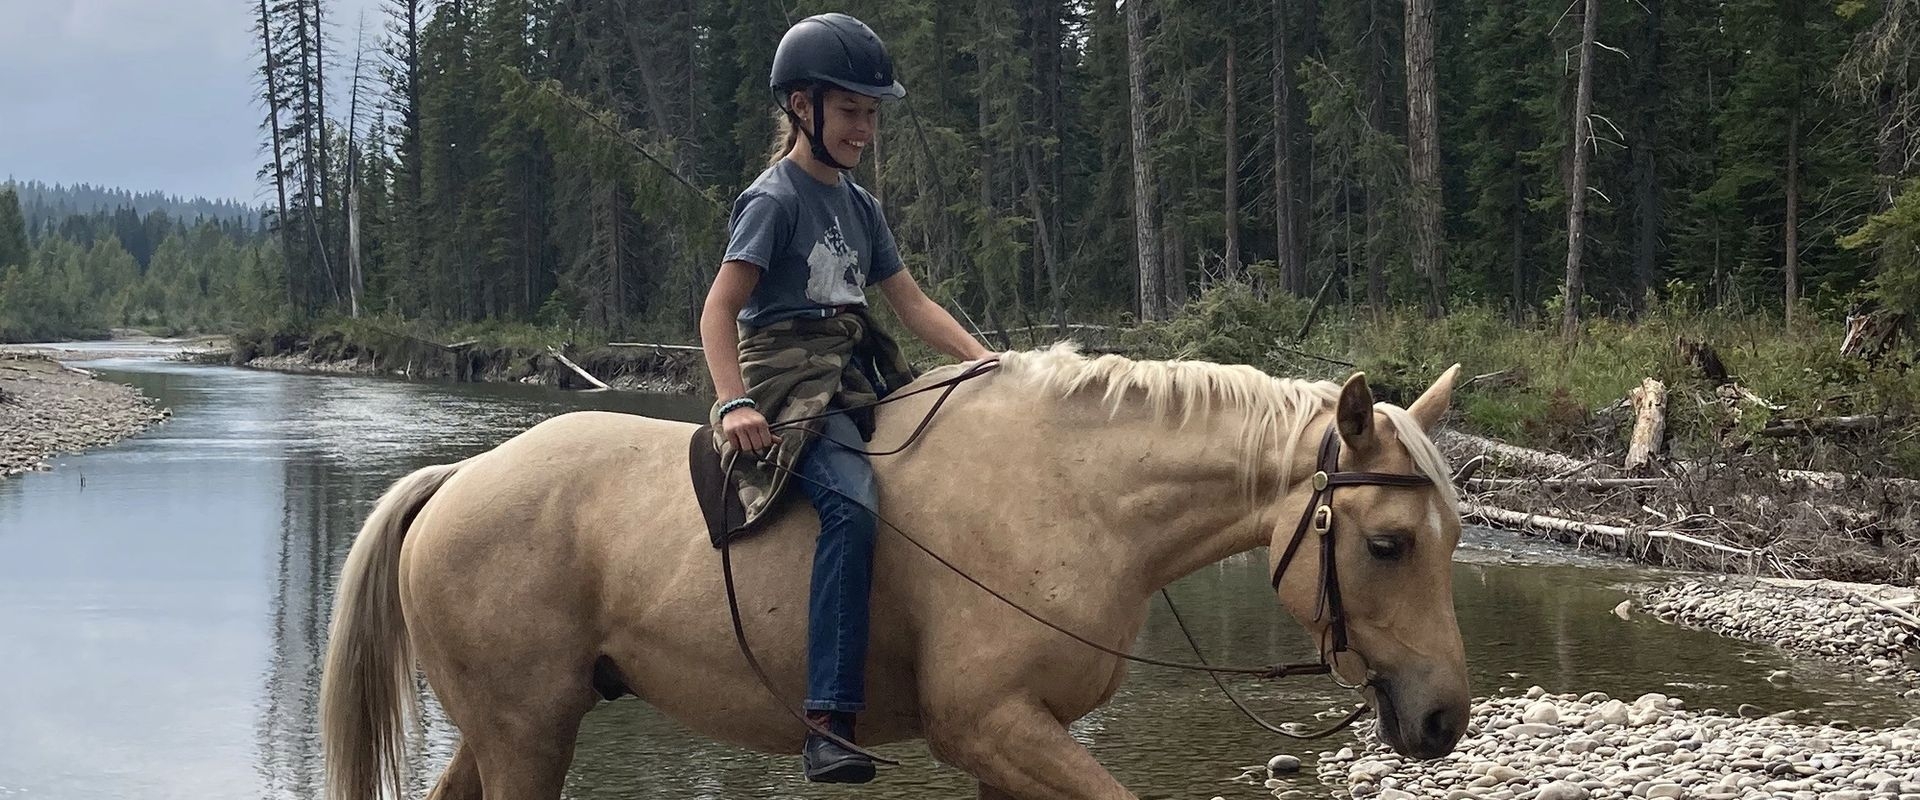 Girl riding palomino horse through rocky creek